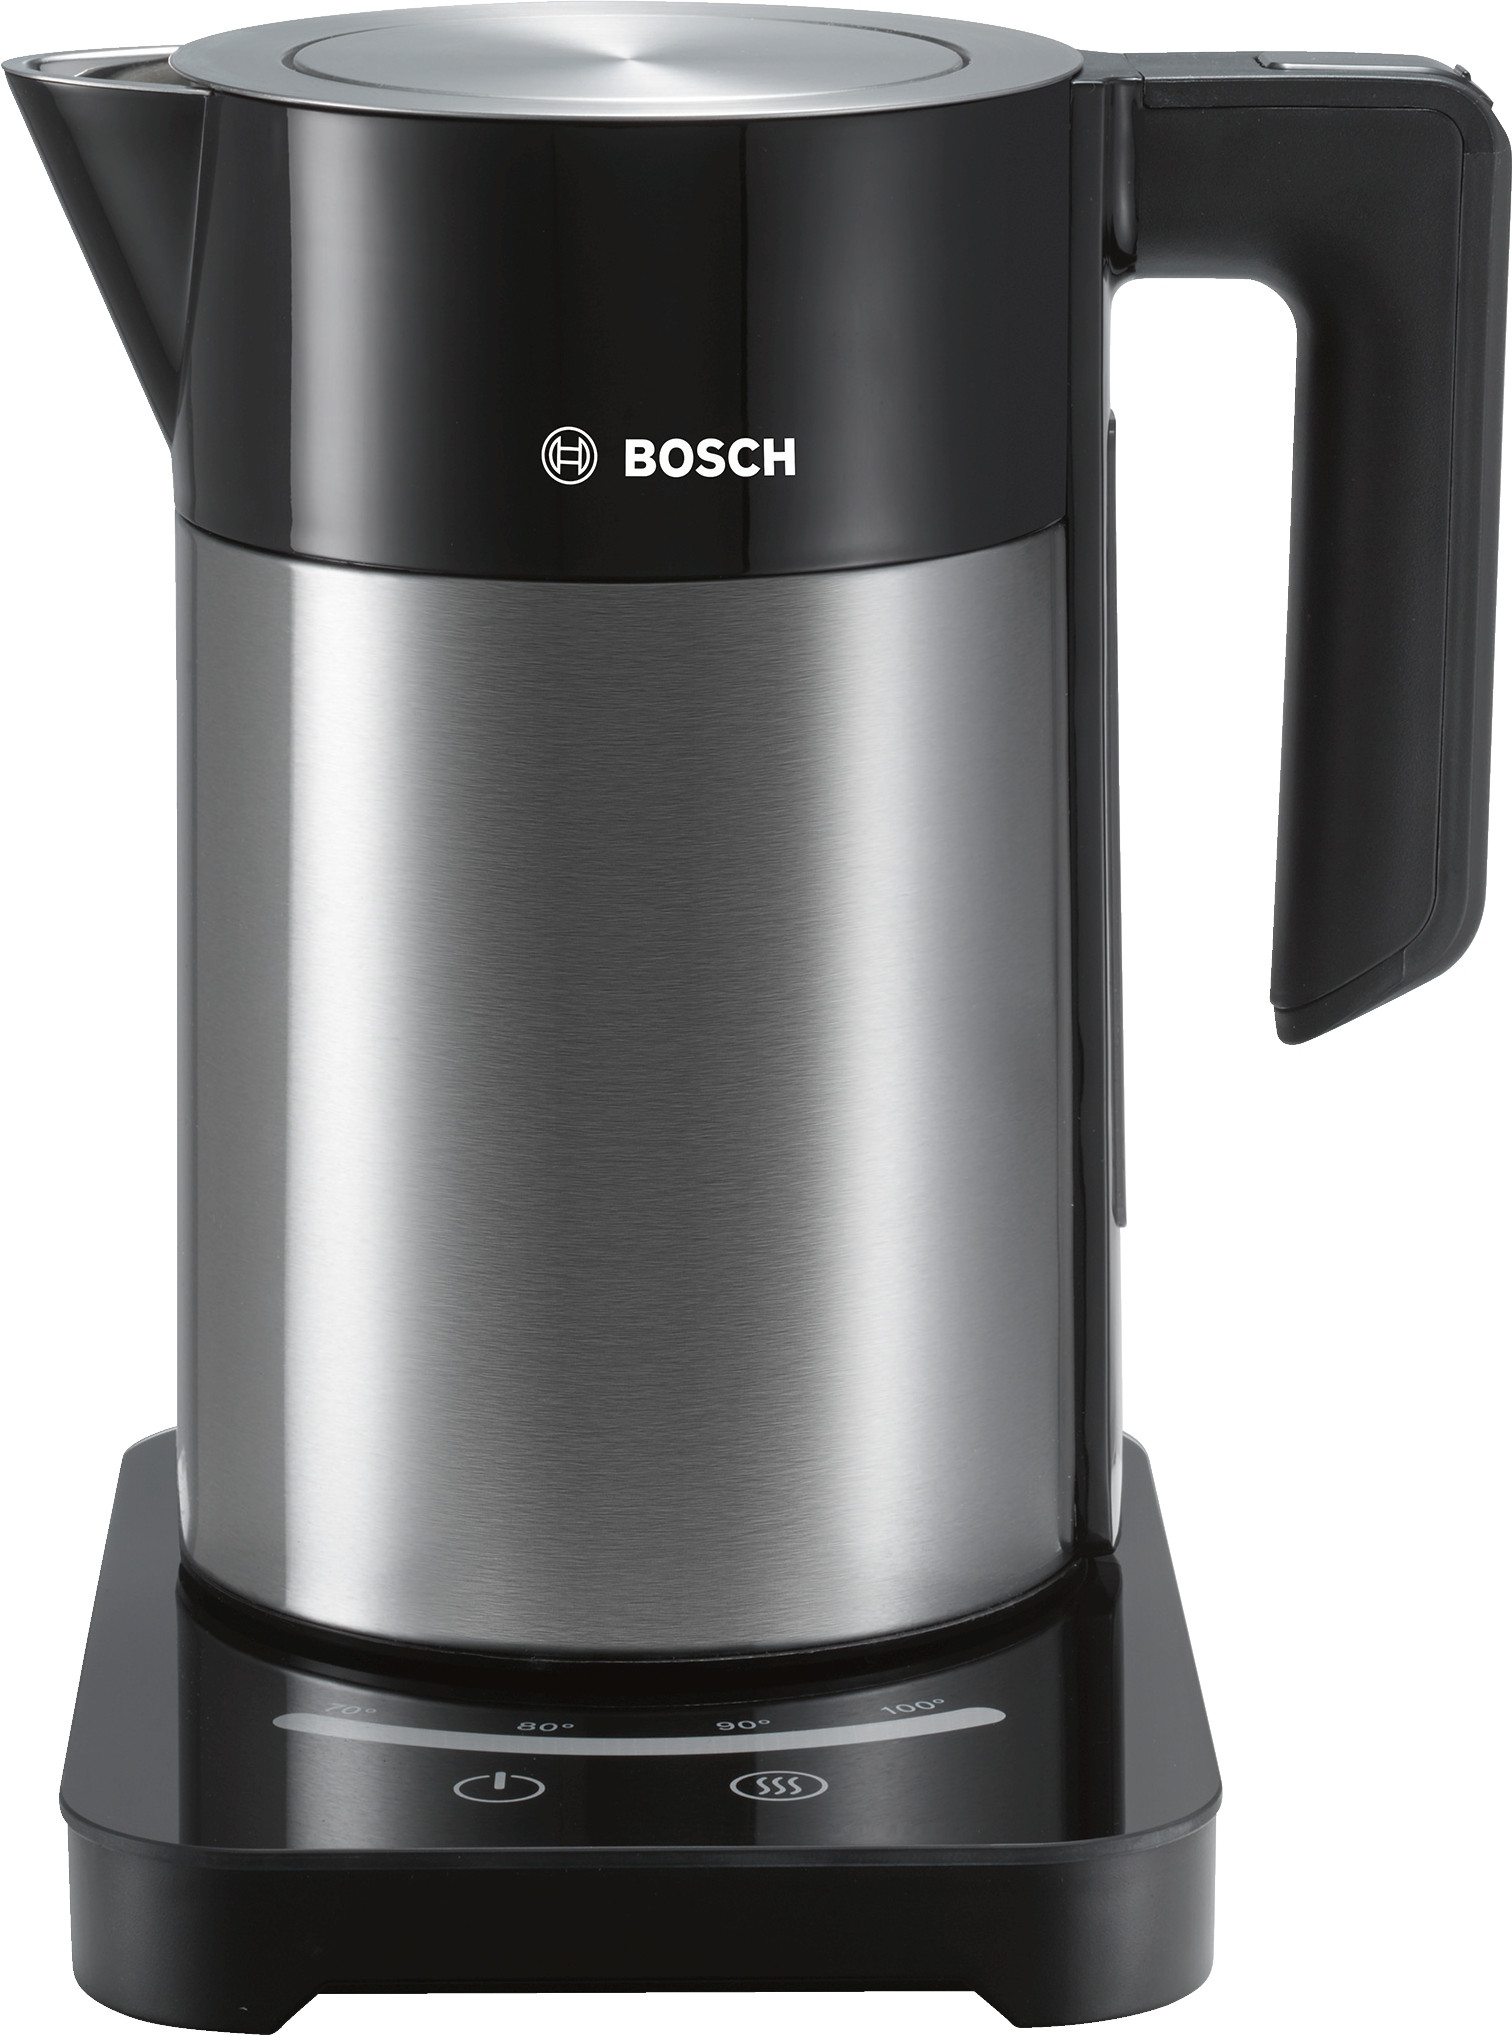 Bosch TWK7203 Wasserkocher 2200W 1,7 Liter Edelstahl/schwarz 7 Temperaturstufen